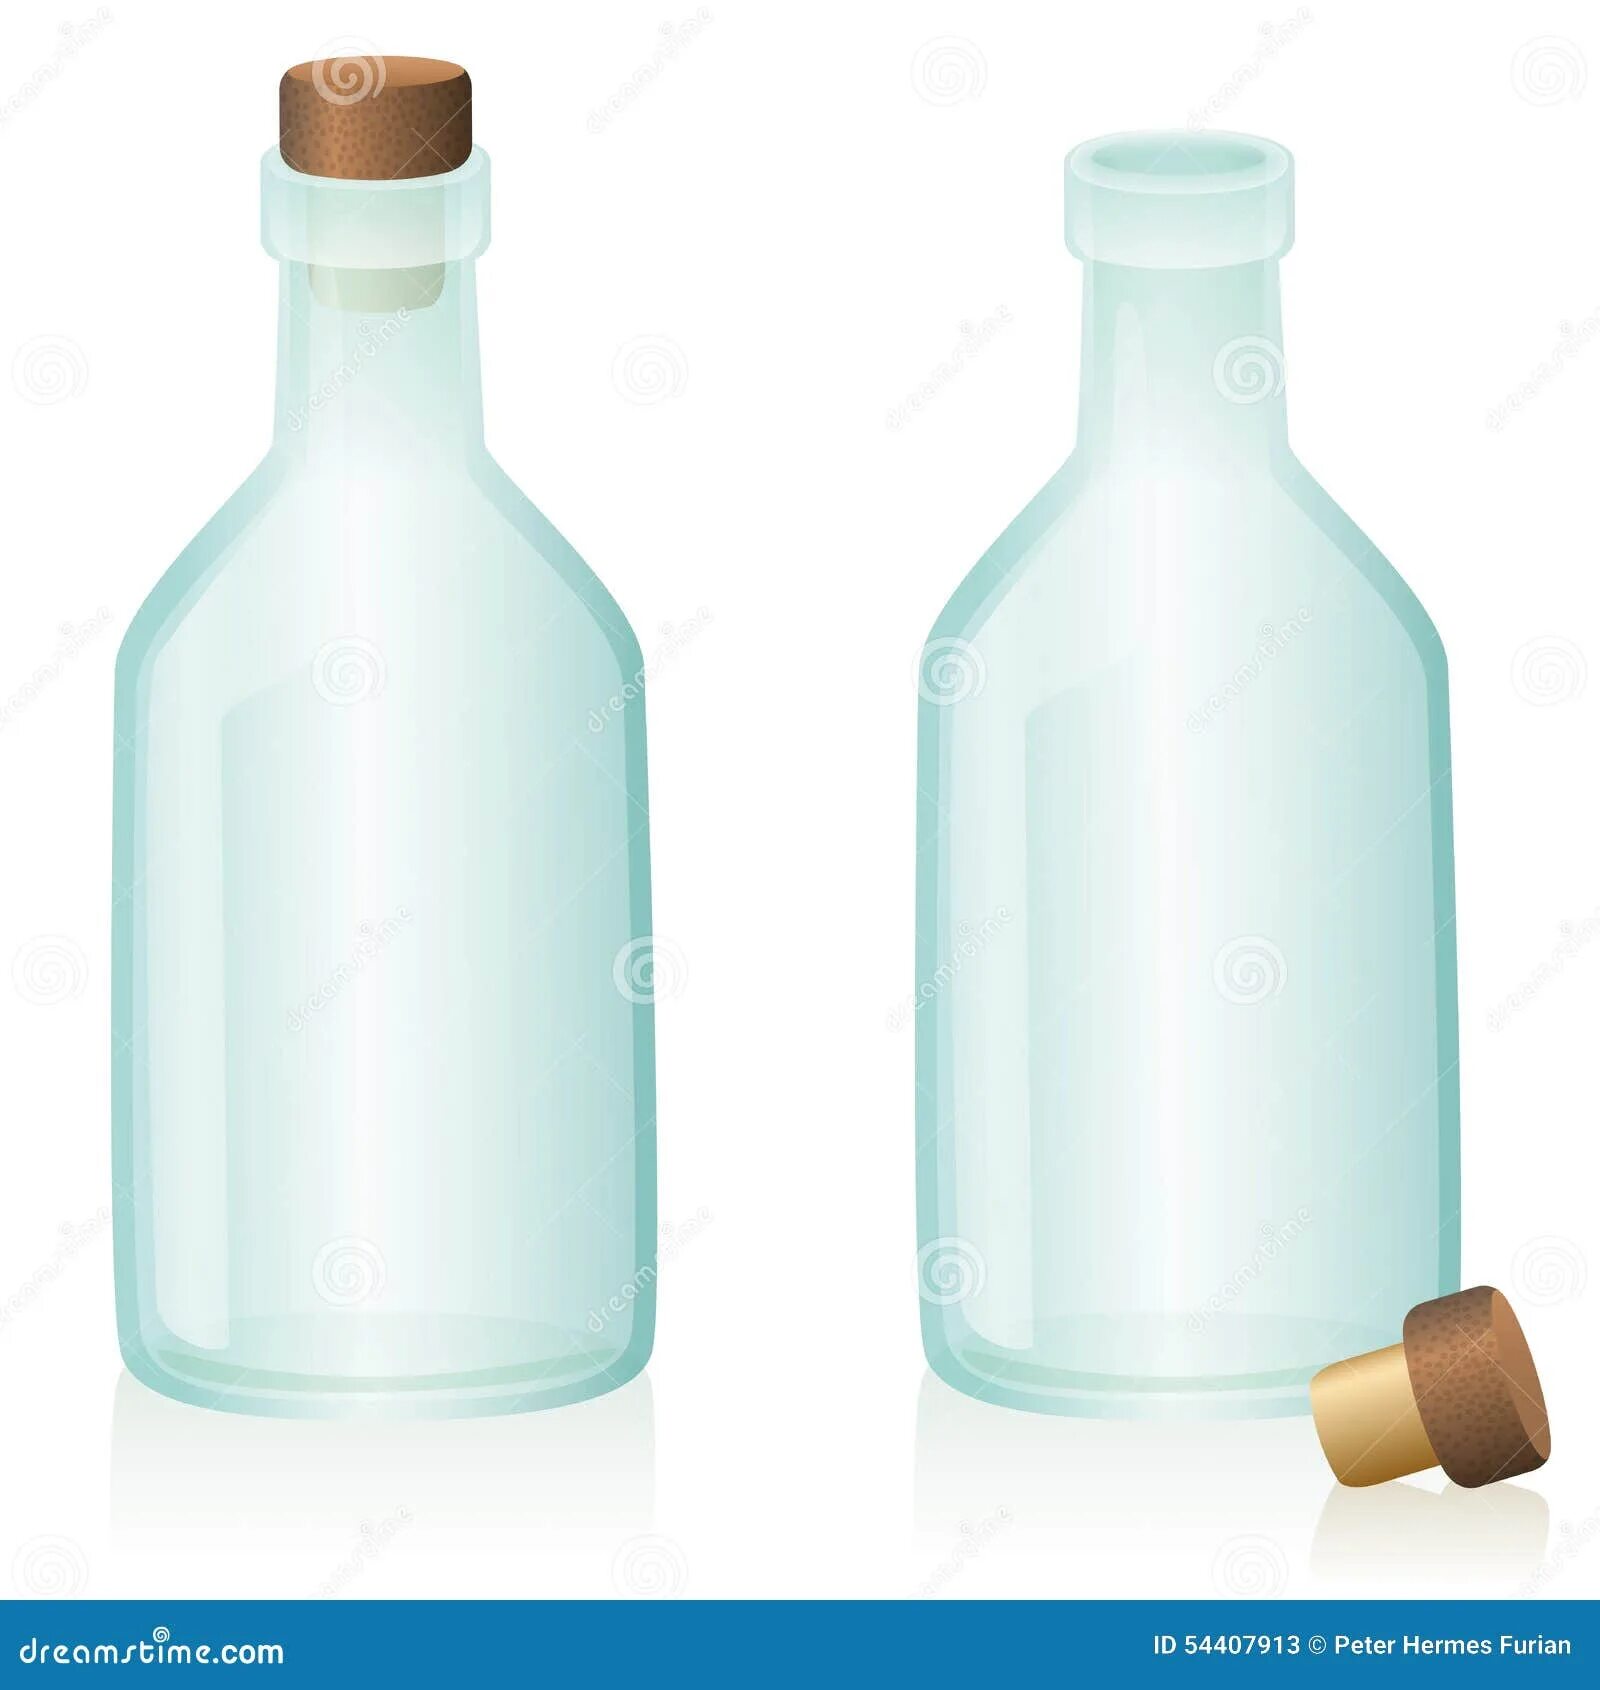 В бутылке закрытой крышкой находится вода. Закрытая бутылка. Бутылка с закрытой и открытой крышкой. Закрытая герметичная закрытая бутылка. Пробка для ПЭТ бутылки.